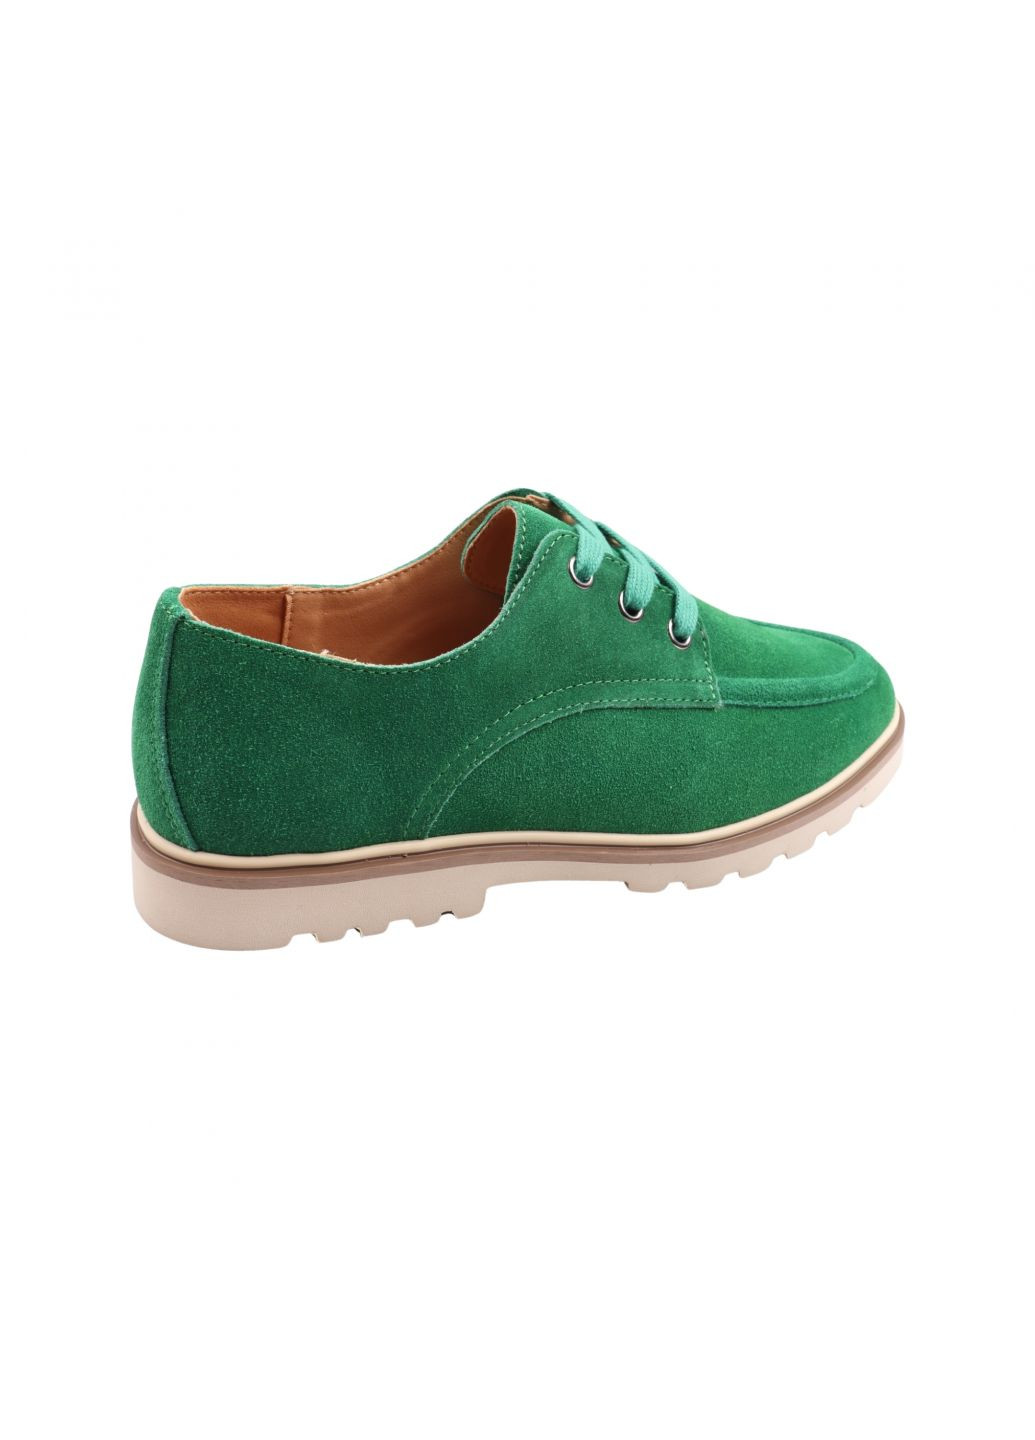 Туфлі жіночі зелені натуральна замша Gifanni 189-23dtc (257454567)